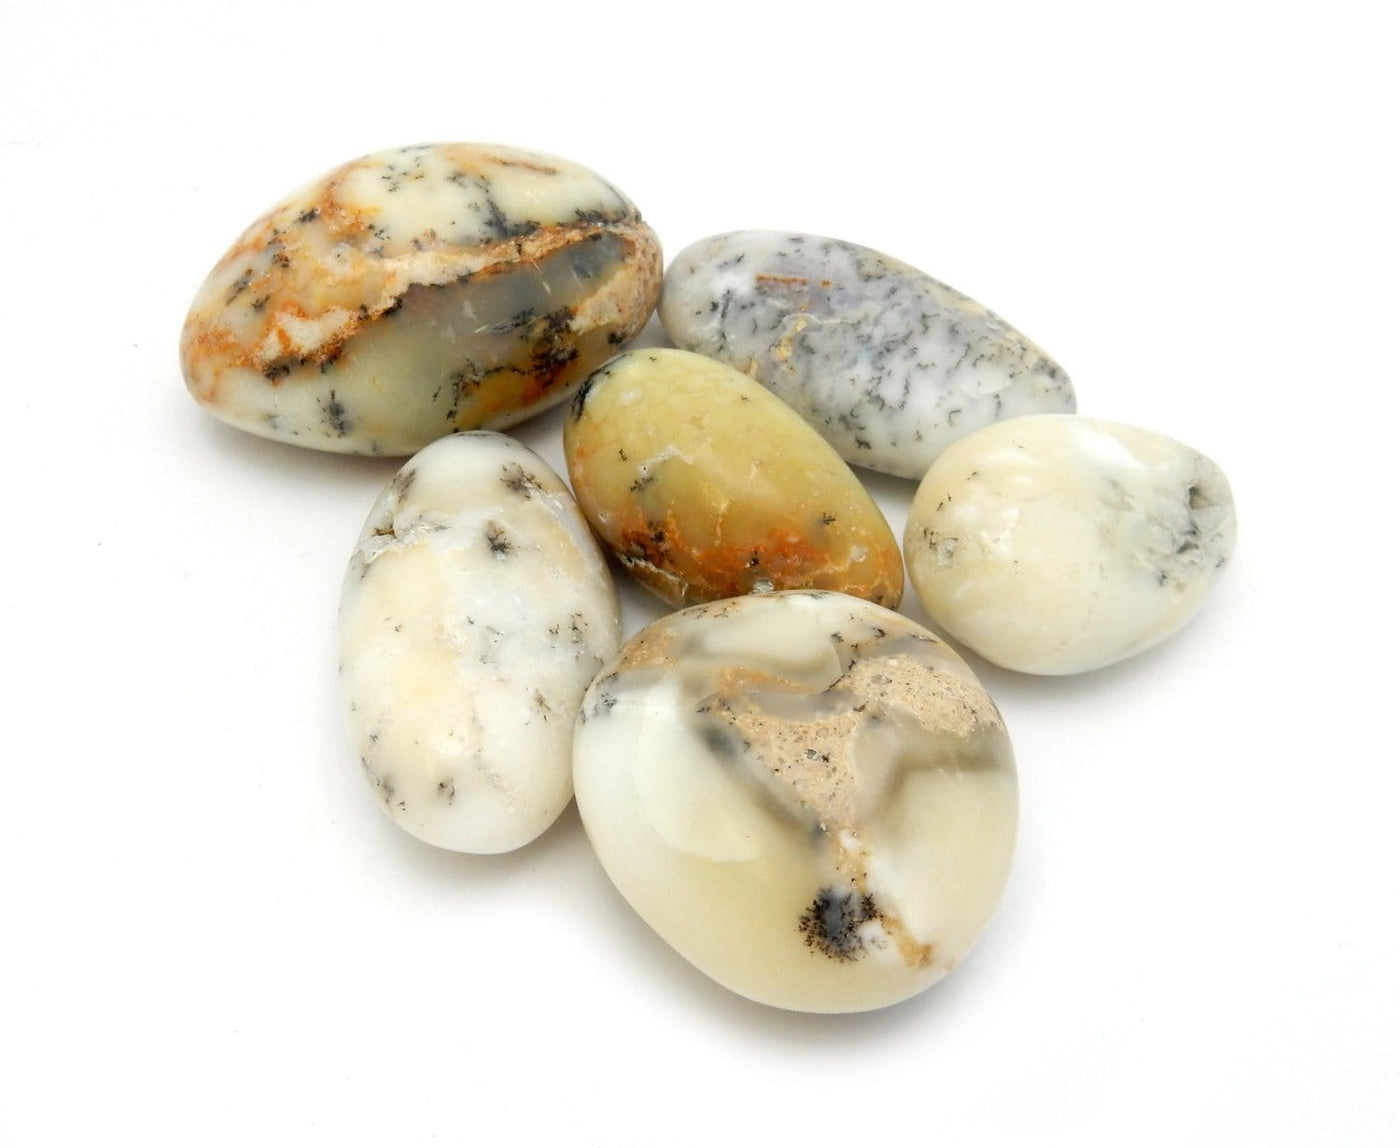 Large Tumbled Agate stones on white background